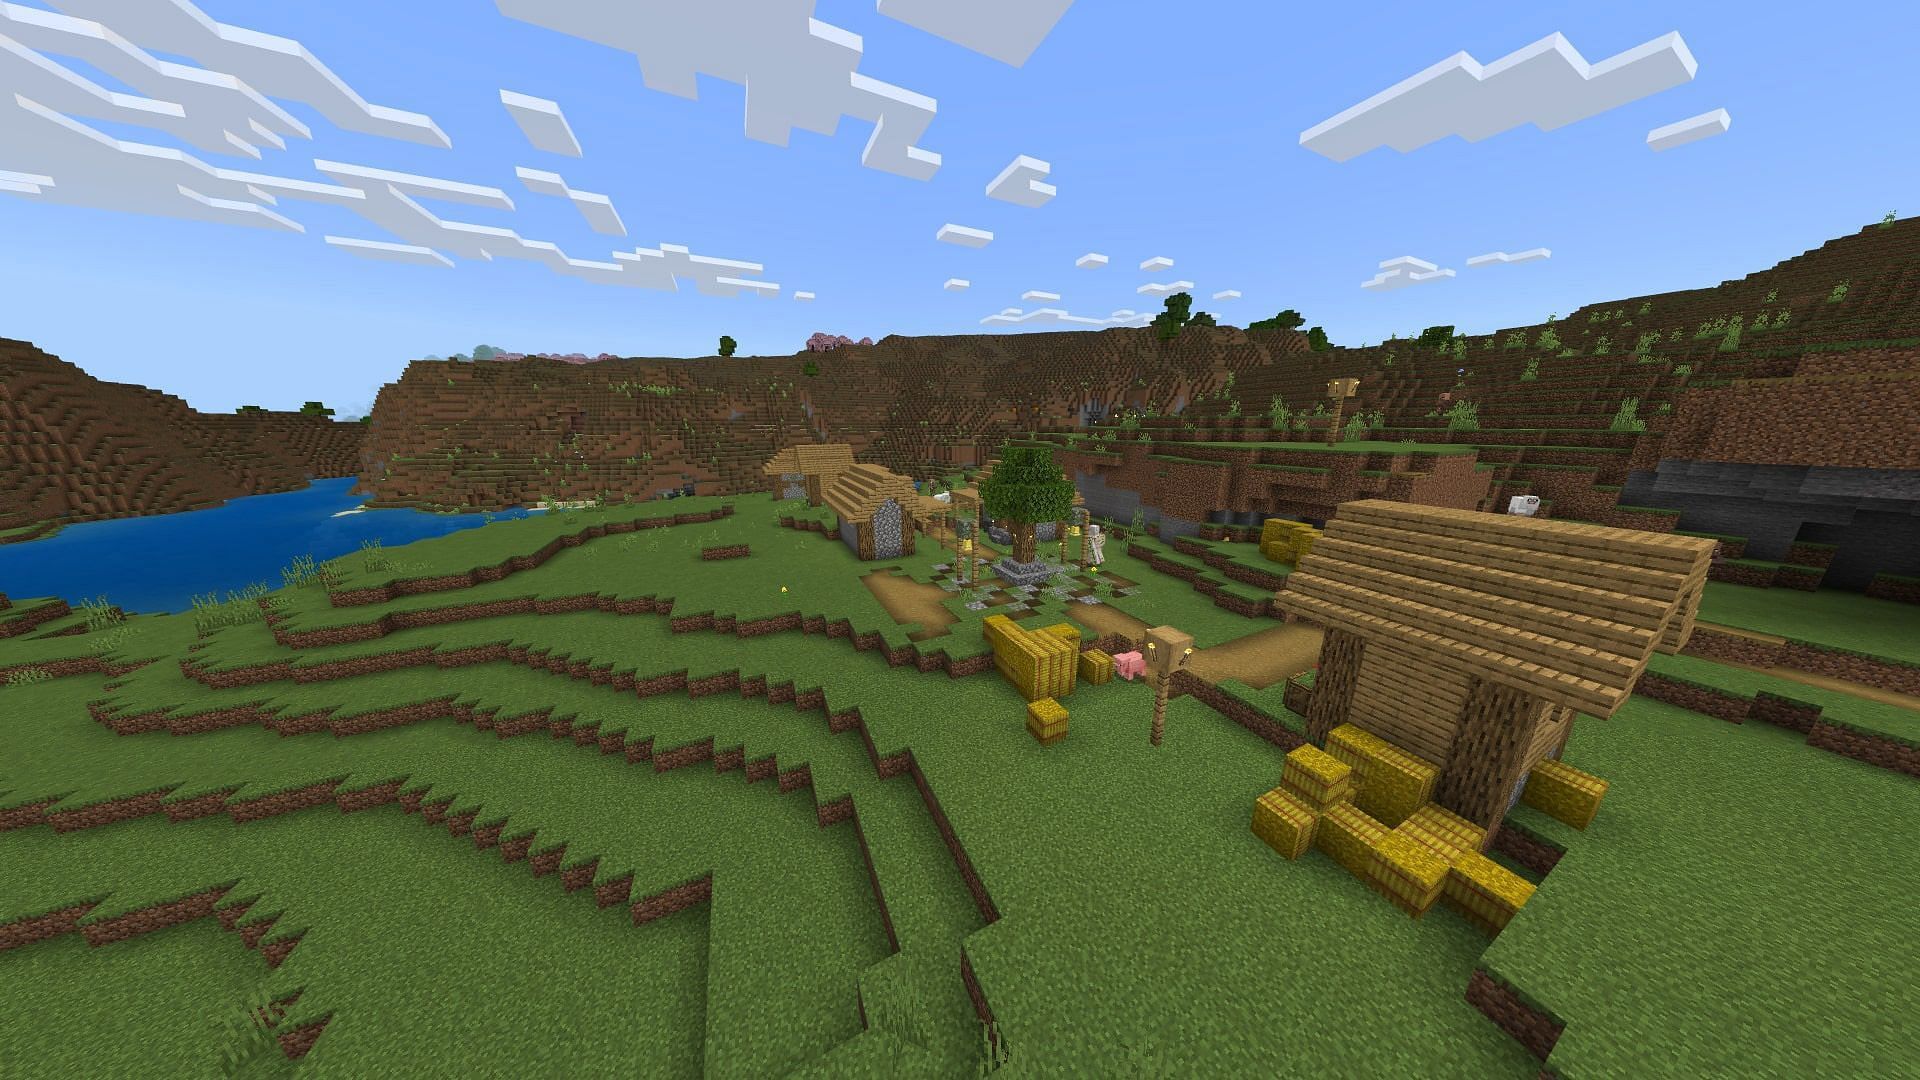 Village with emeralds (Image via Minecraft)